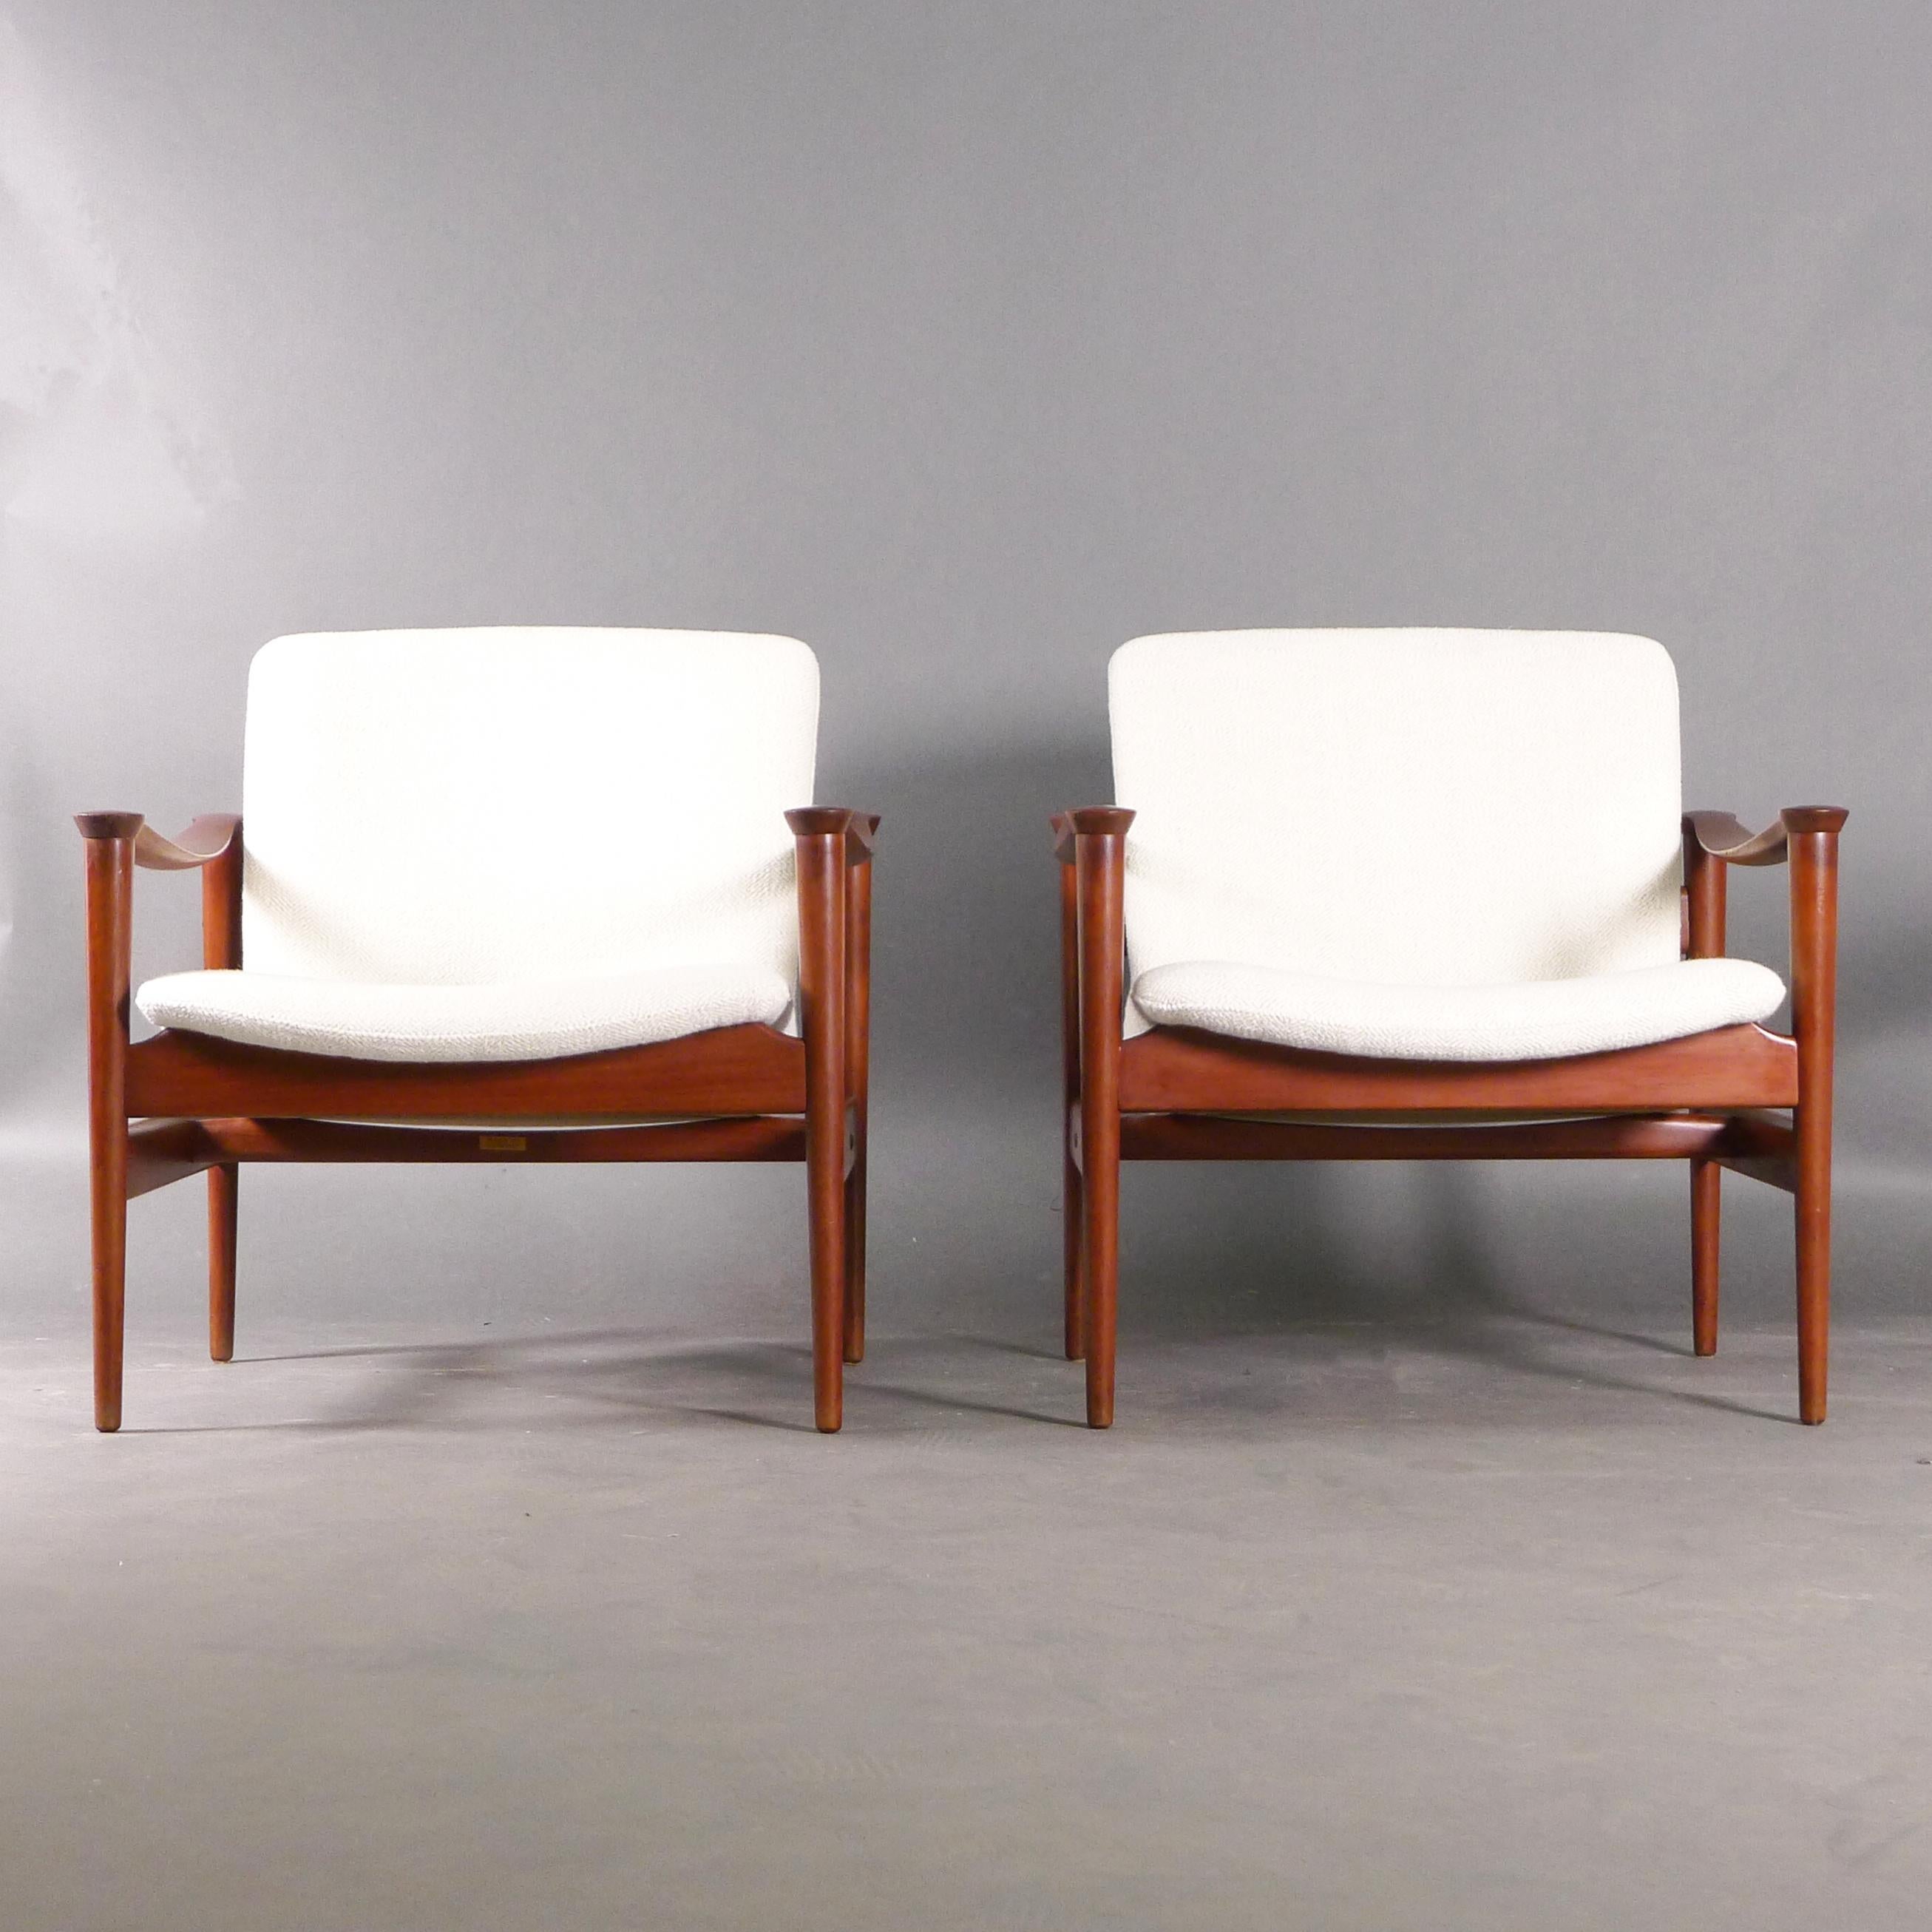 Magnifique paire de chaises longues norvégiennes des années 1960, modèle 711, conçues par Fredrik A Kayser en 1960 et fabriquées par Vatne Lenestolfabrikk. Les cadres en teck ont une belle patine et les accoudoirs en forme sont ornés de rondeurs.